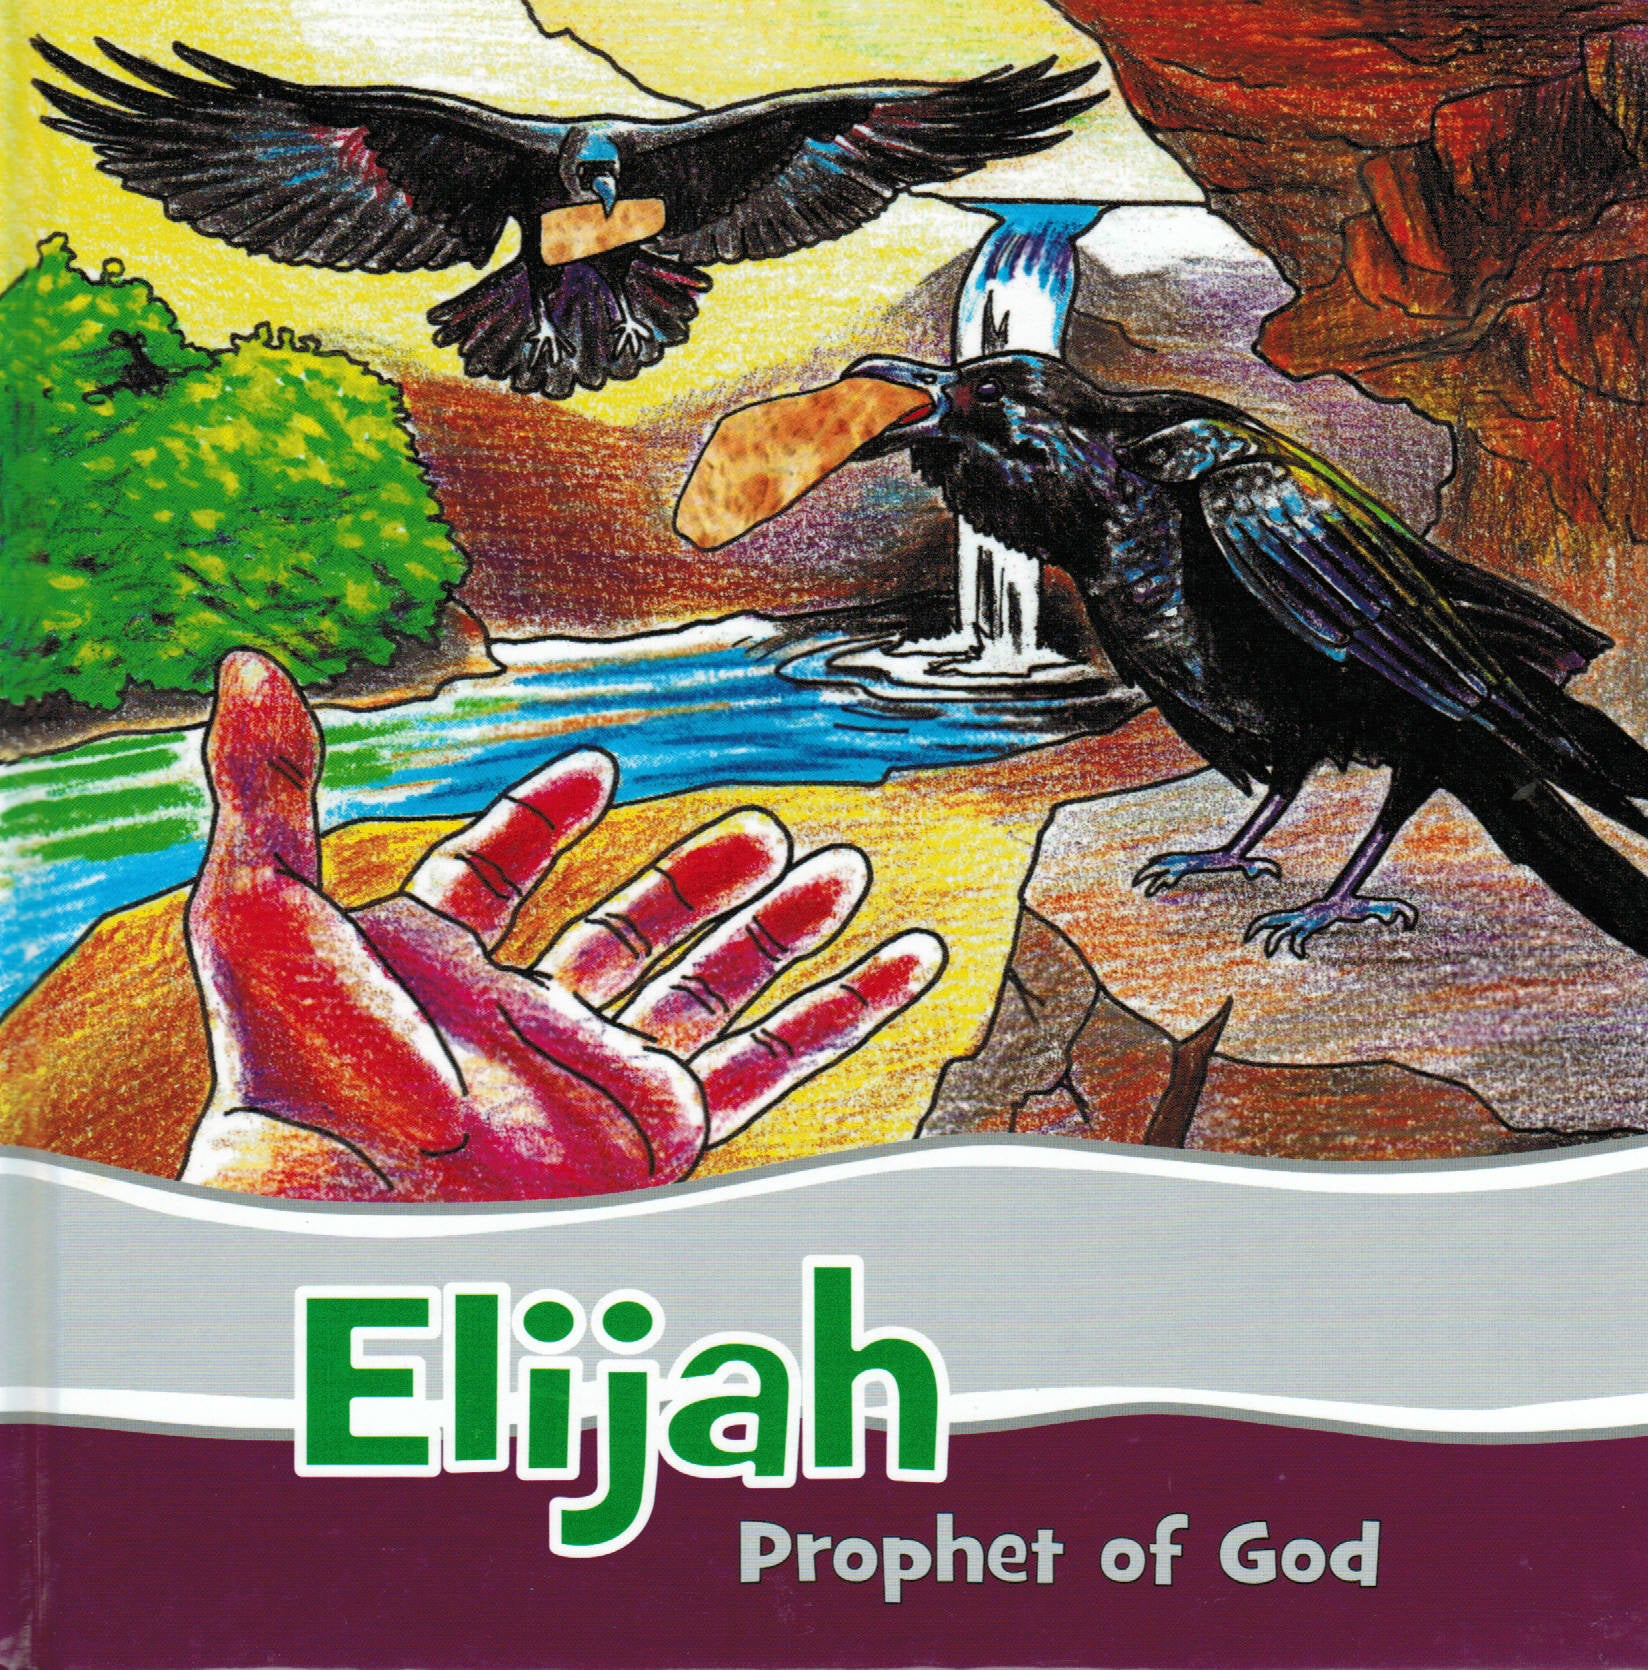 Faithful Footsteps - Elijah: Prophet of God